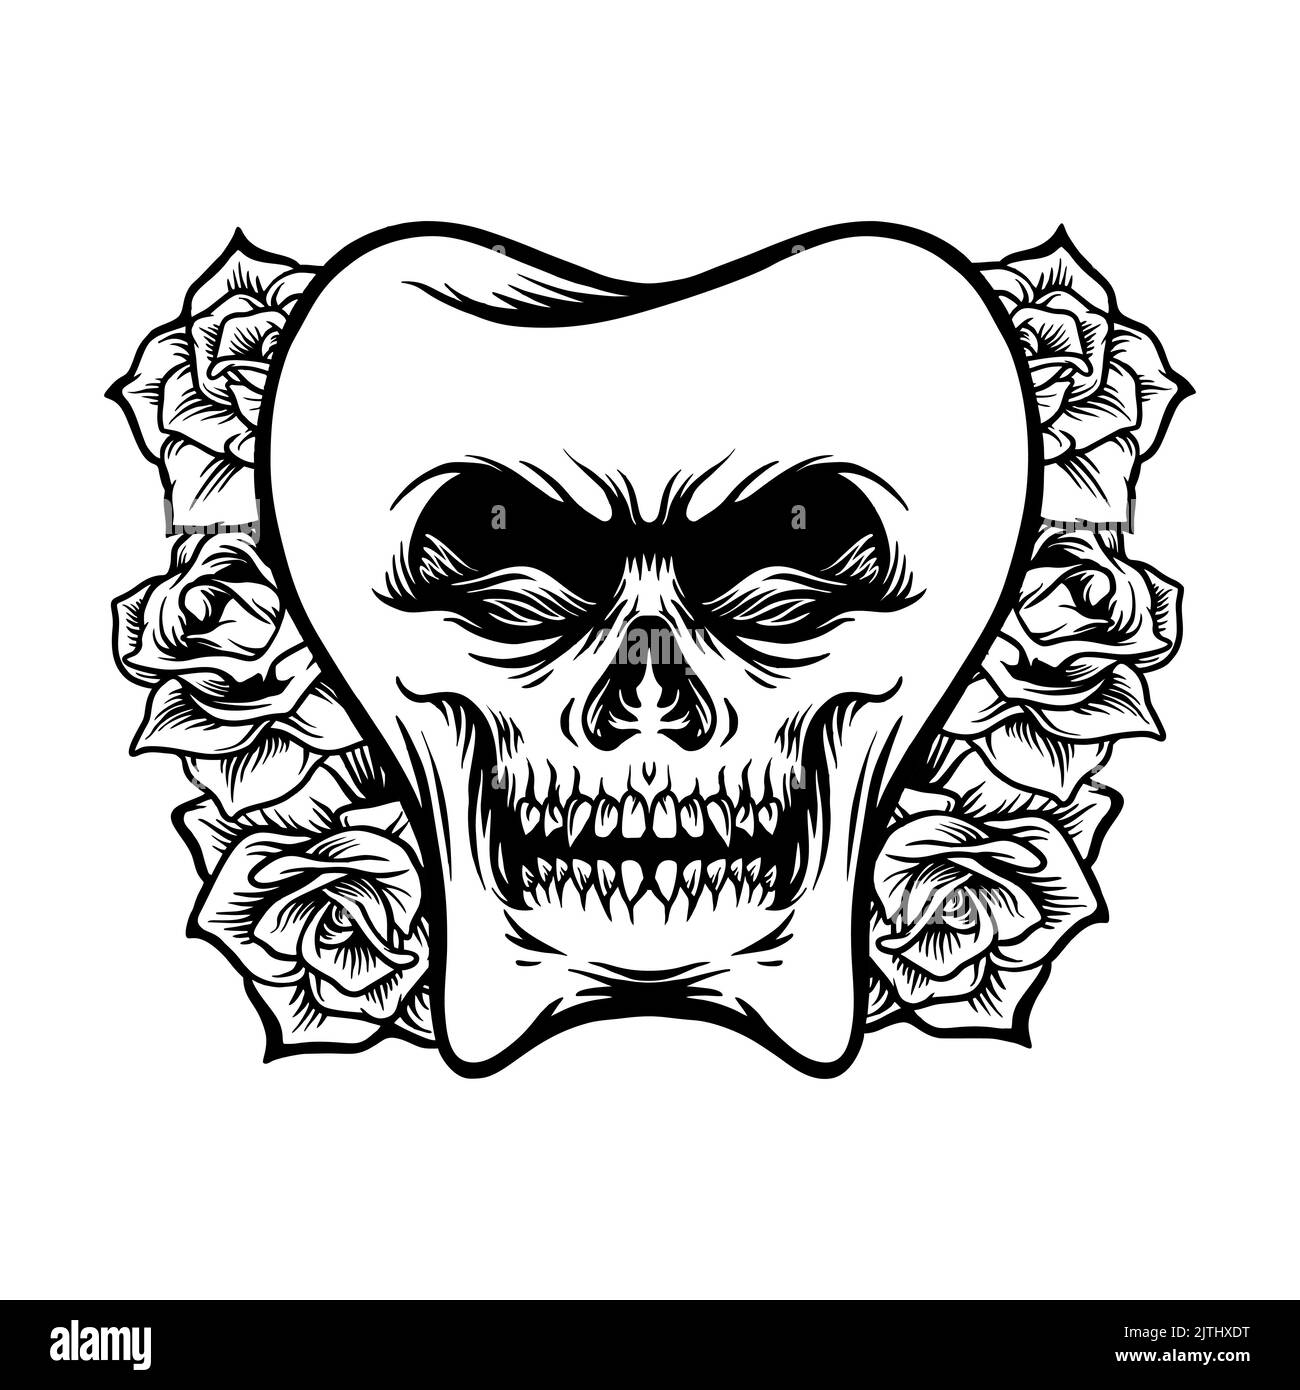 skull rose wallpaper by lizbethxx  Download on ZEDGE  687f